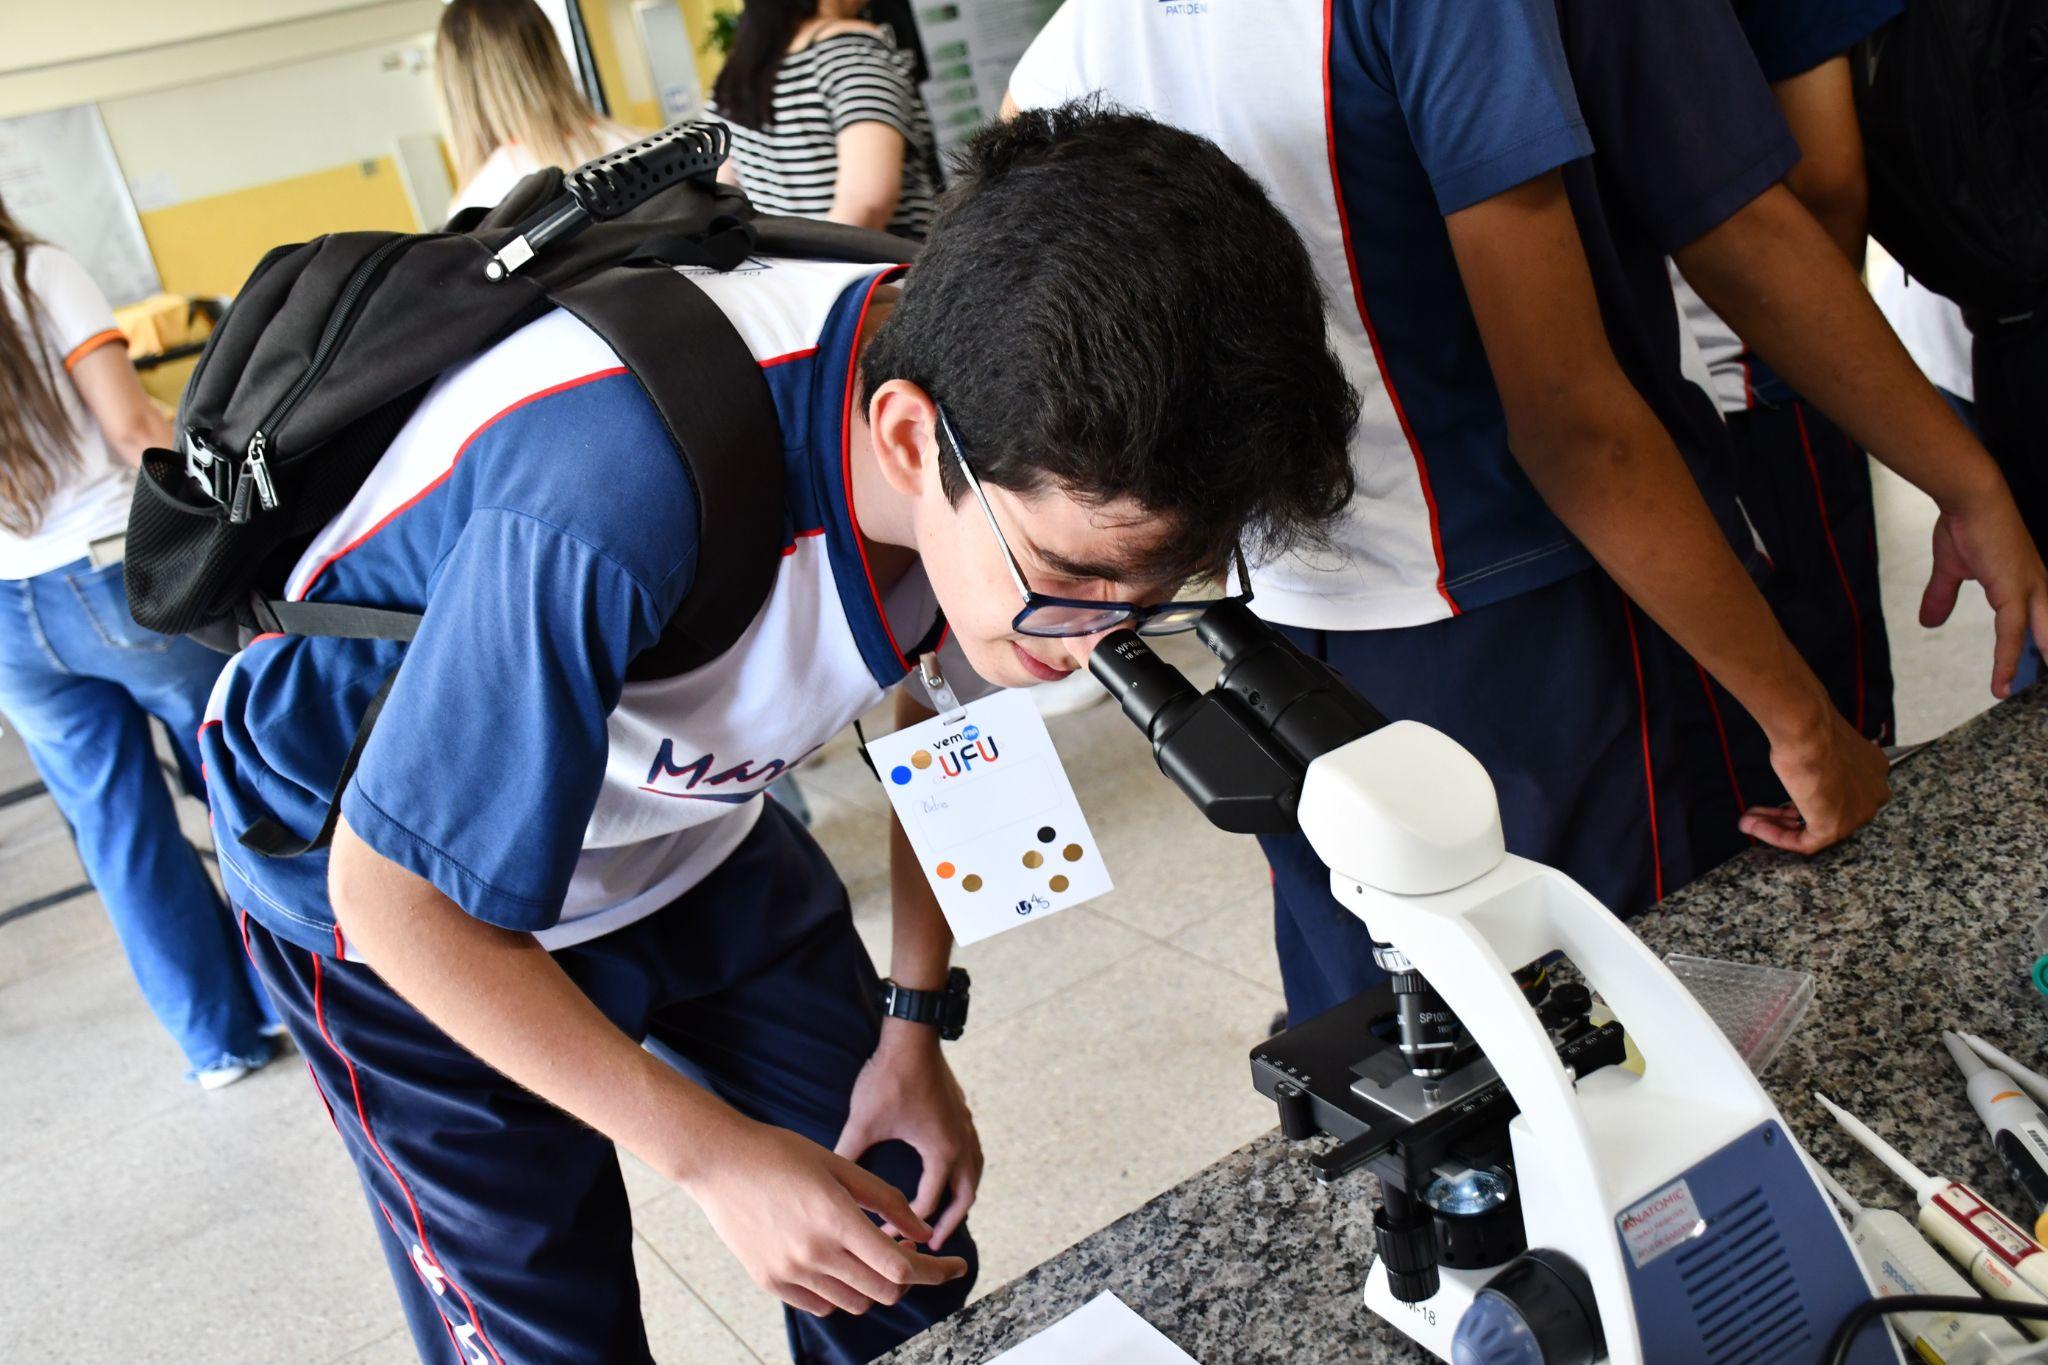 Estudante do ensino médio com os olhos num microscópio óptico